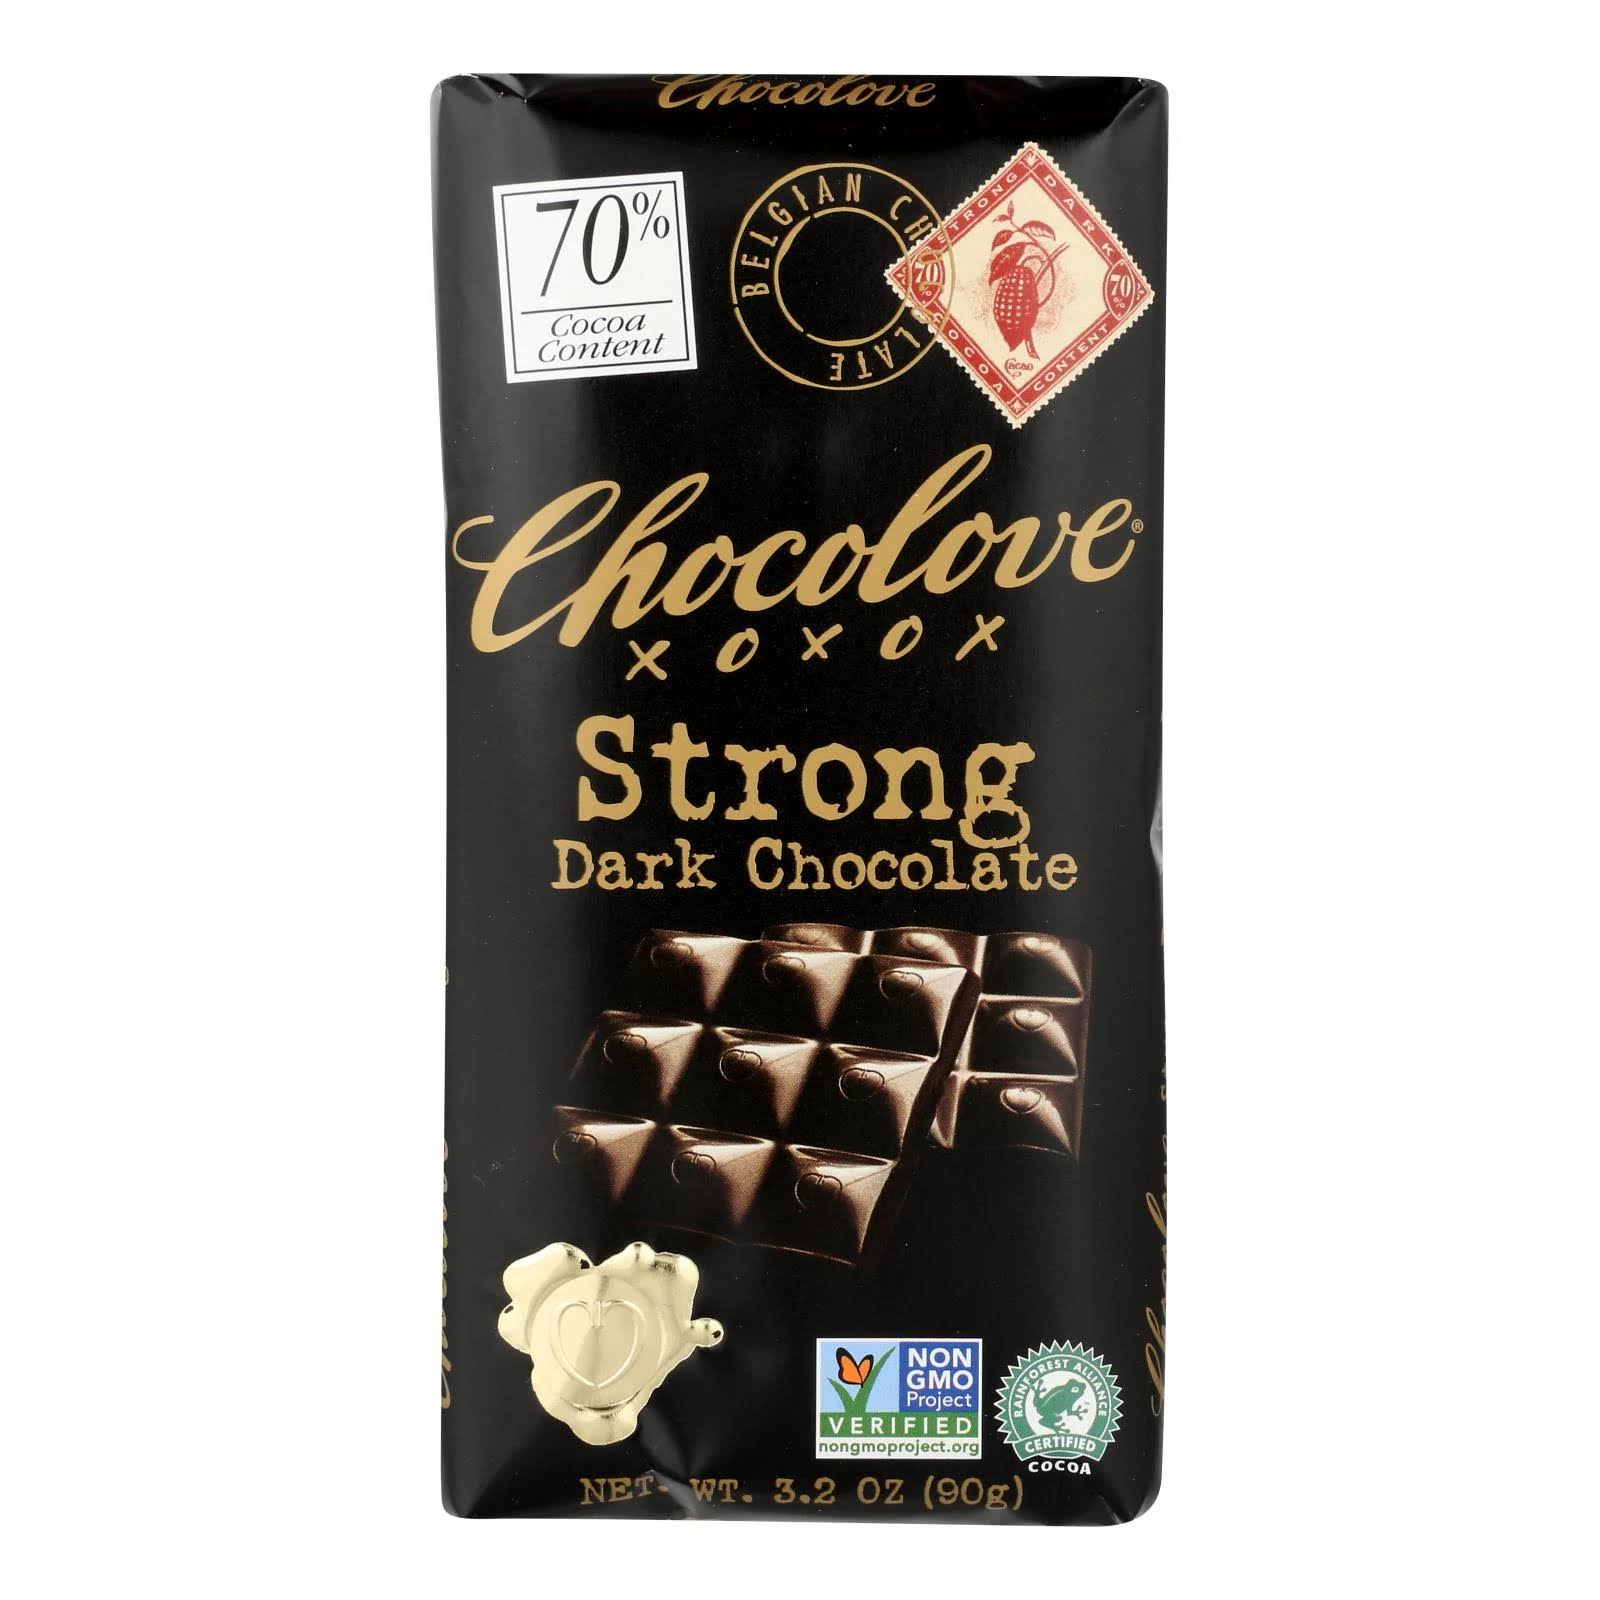 Chocolove Premium Chocolate Bars - Strong Dark Chocolate